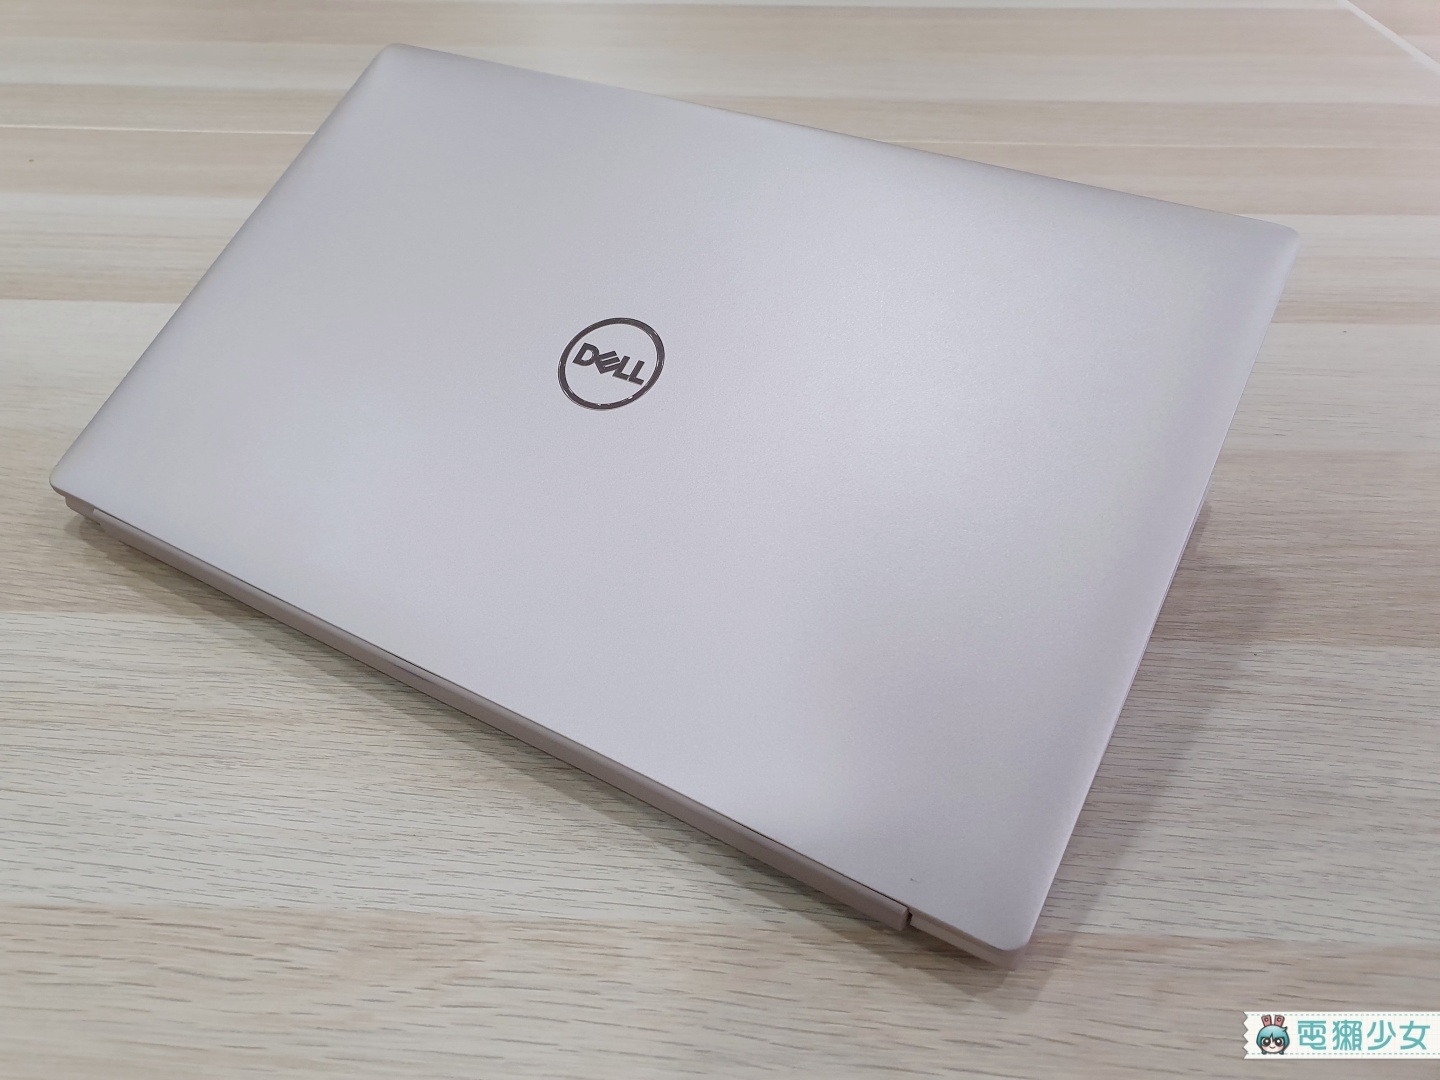 開箱｜只有 1.09 公斤！『 Dell Inspiron 7490 』搭載十代 Intel Core 處理器的輕薄美型獨顯筆電